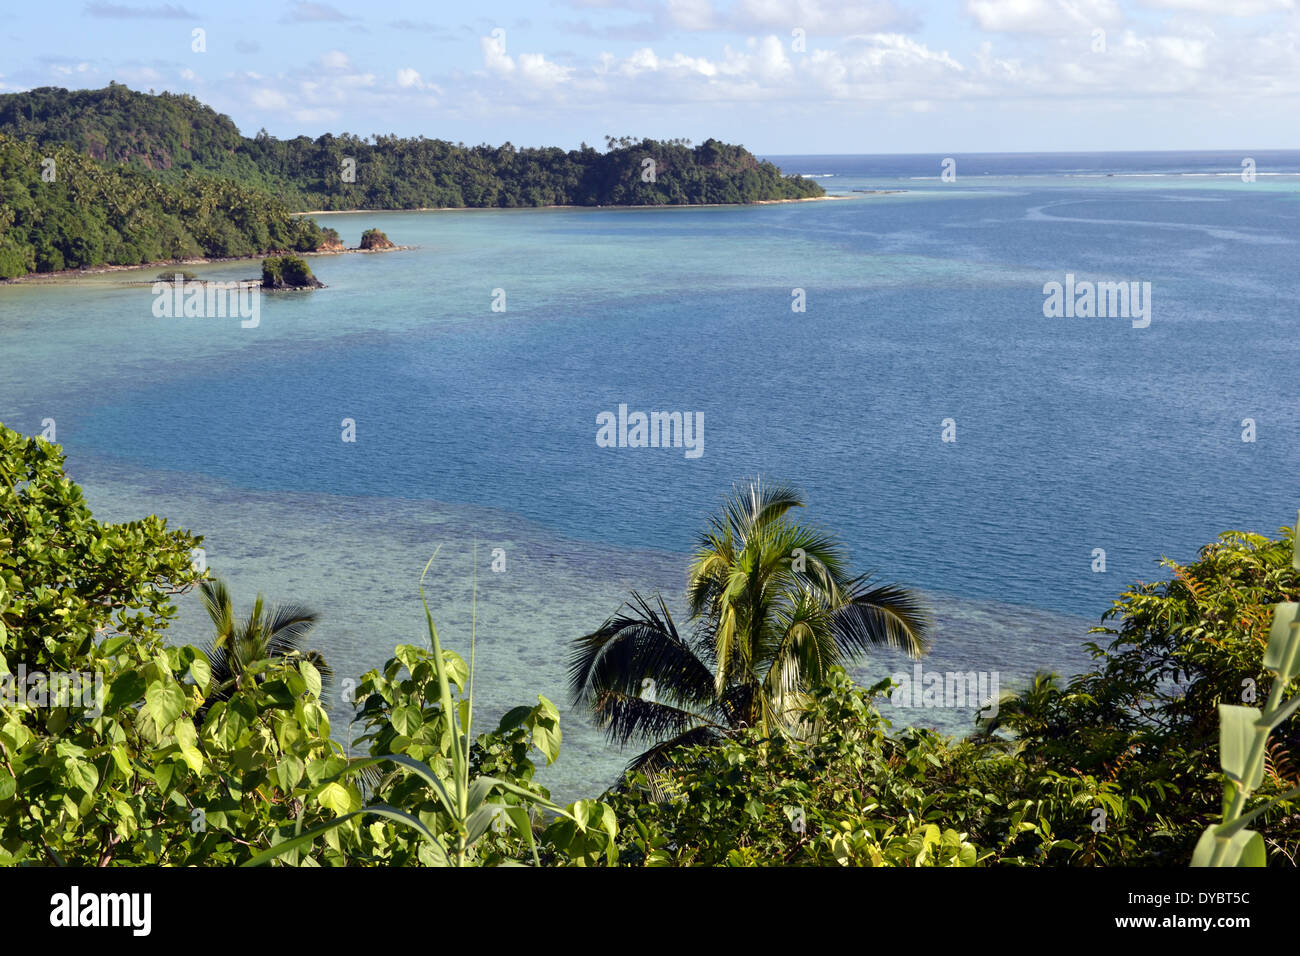 Vista di isolotto Nukuatea, isola di Wallis, Wallis e Futuna, Melanesia, Sud Pacifico Foto Stock